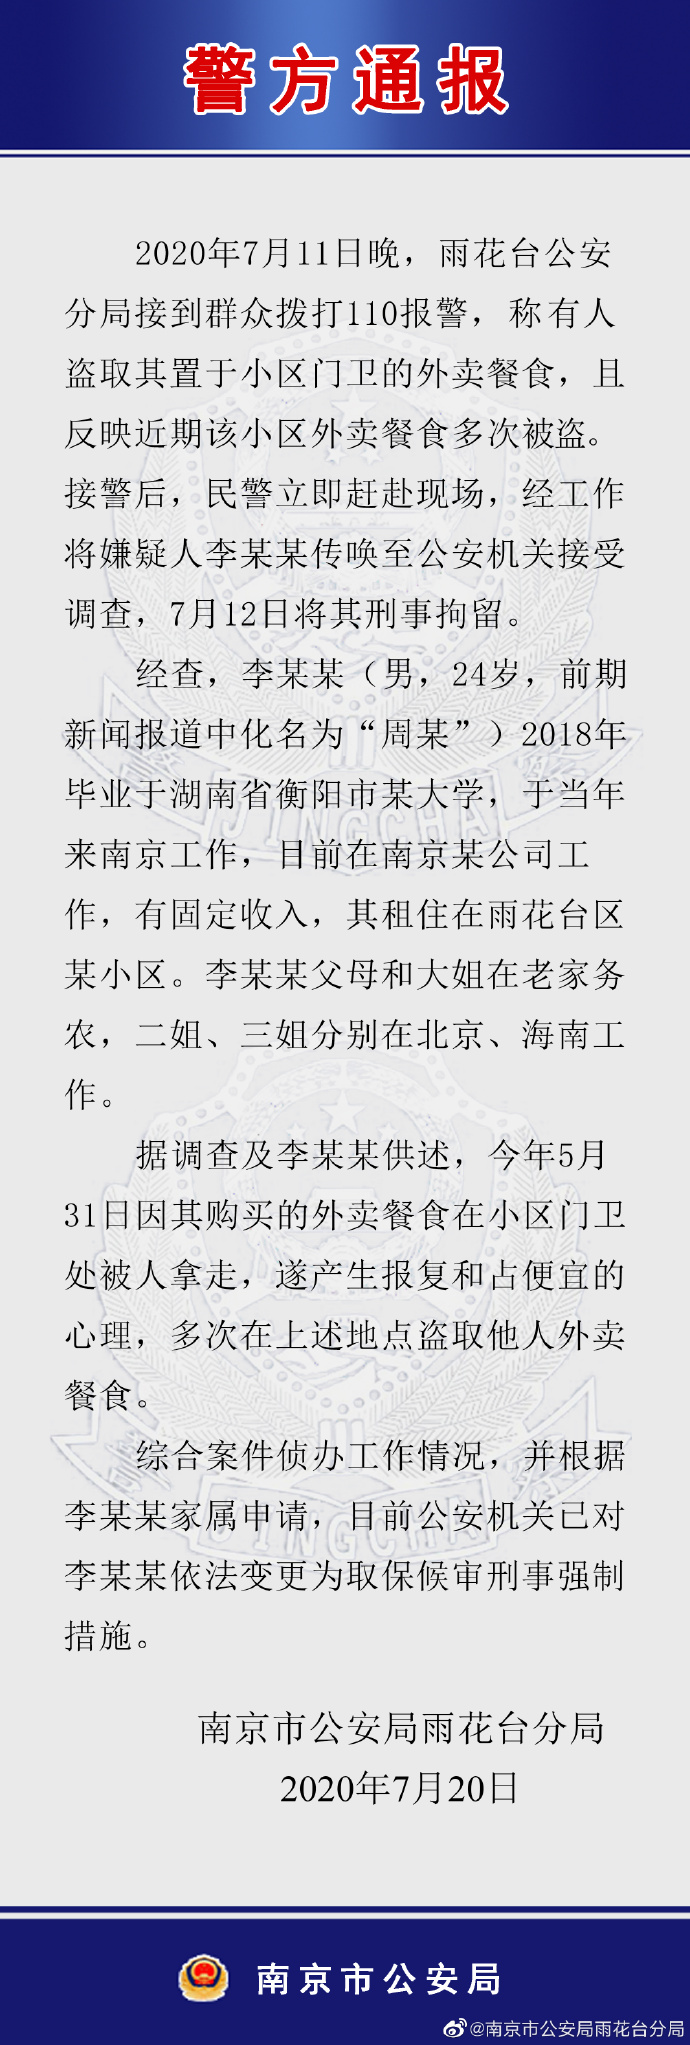 自述“外卖曾被人拿走产生报复心理”，警方通报“大学生偷外卖”事件|南京市